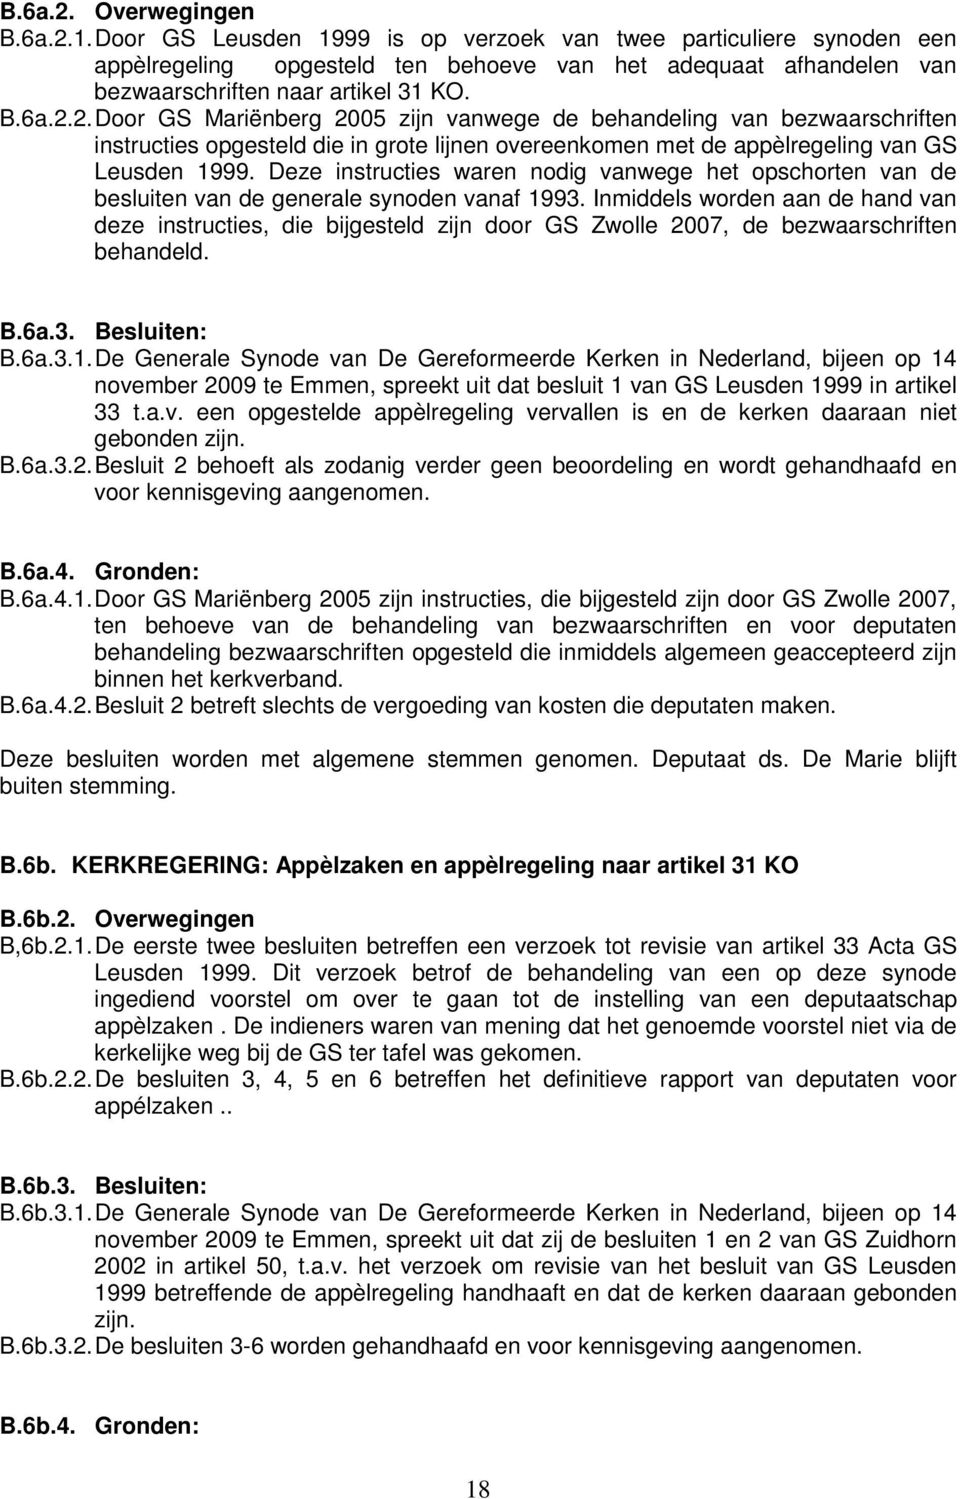 2. Door GS Mariënberg 2005 zijn vanwege de behandeling van bezwaarschriften instructies opgesteld die in grote lijnen overeenkomen met de appèlregeling van GS Leusden 1999.